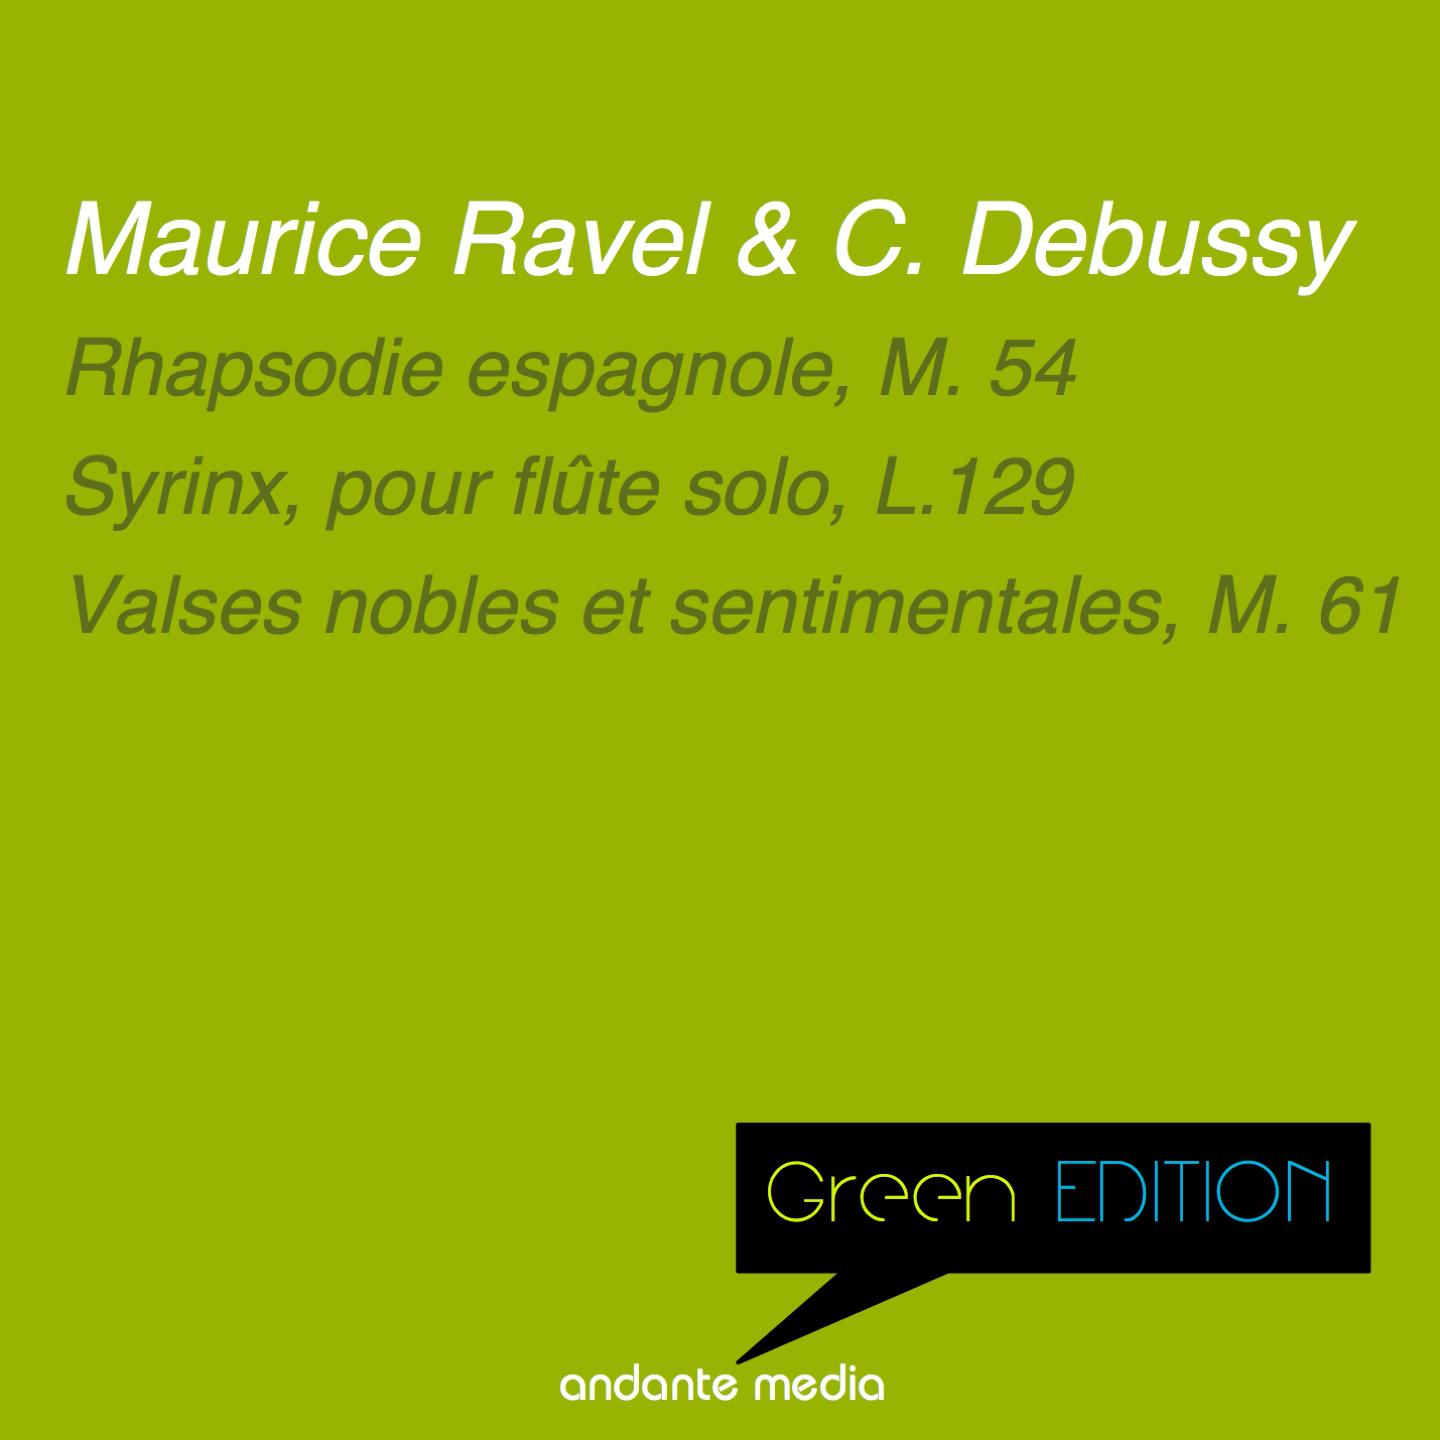 Green Edition - Debussy & Ravel: Rhapsodie espagnole, M. 54